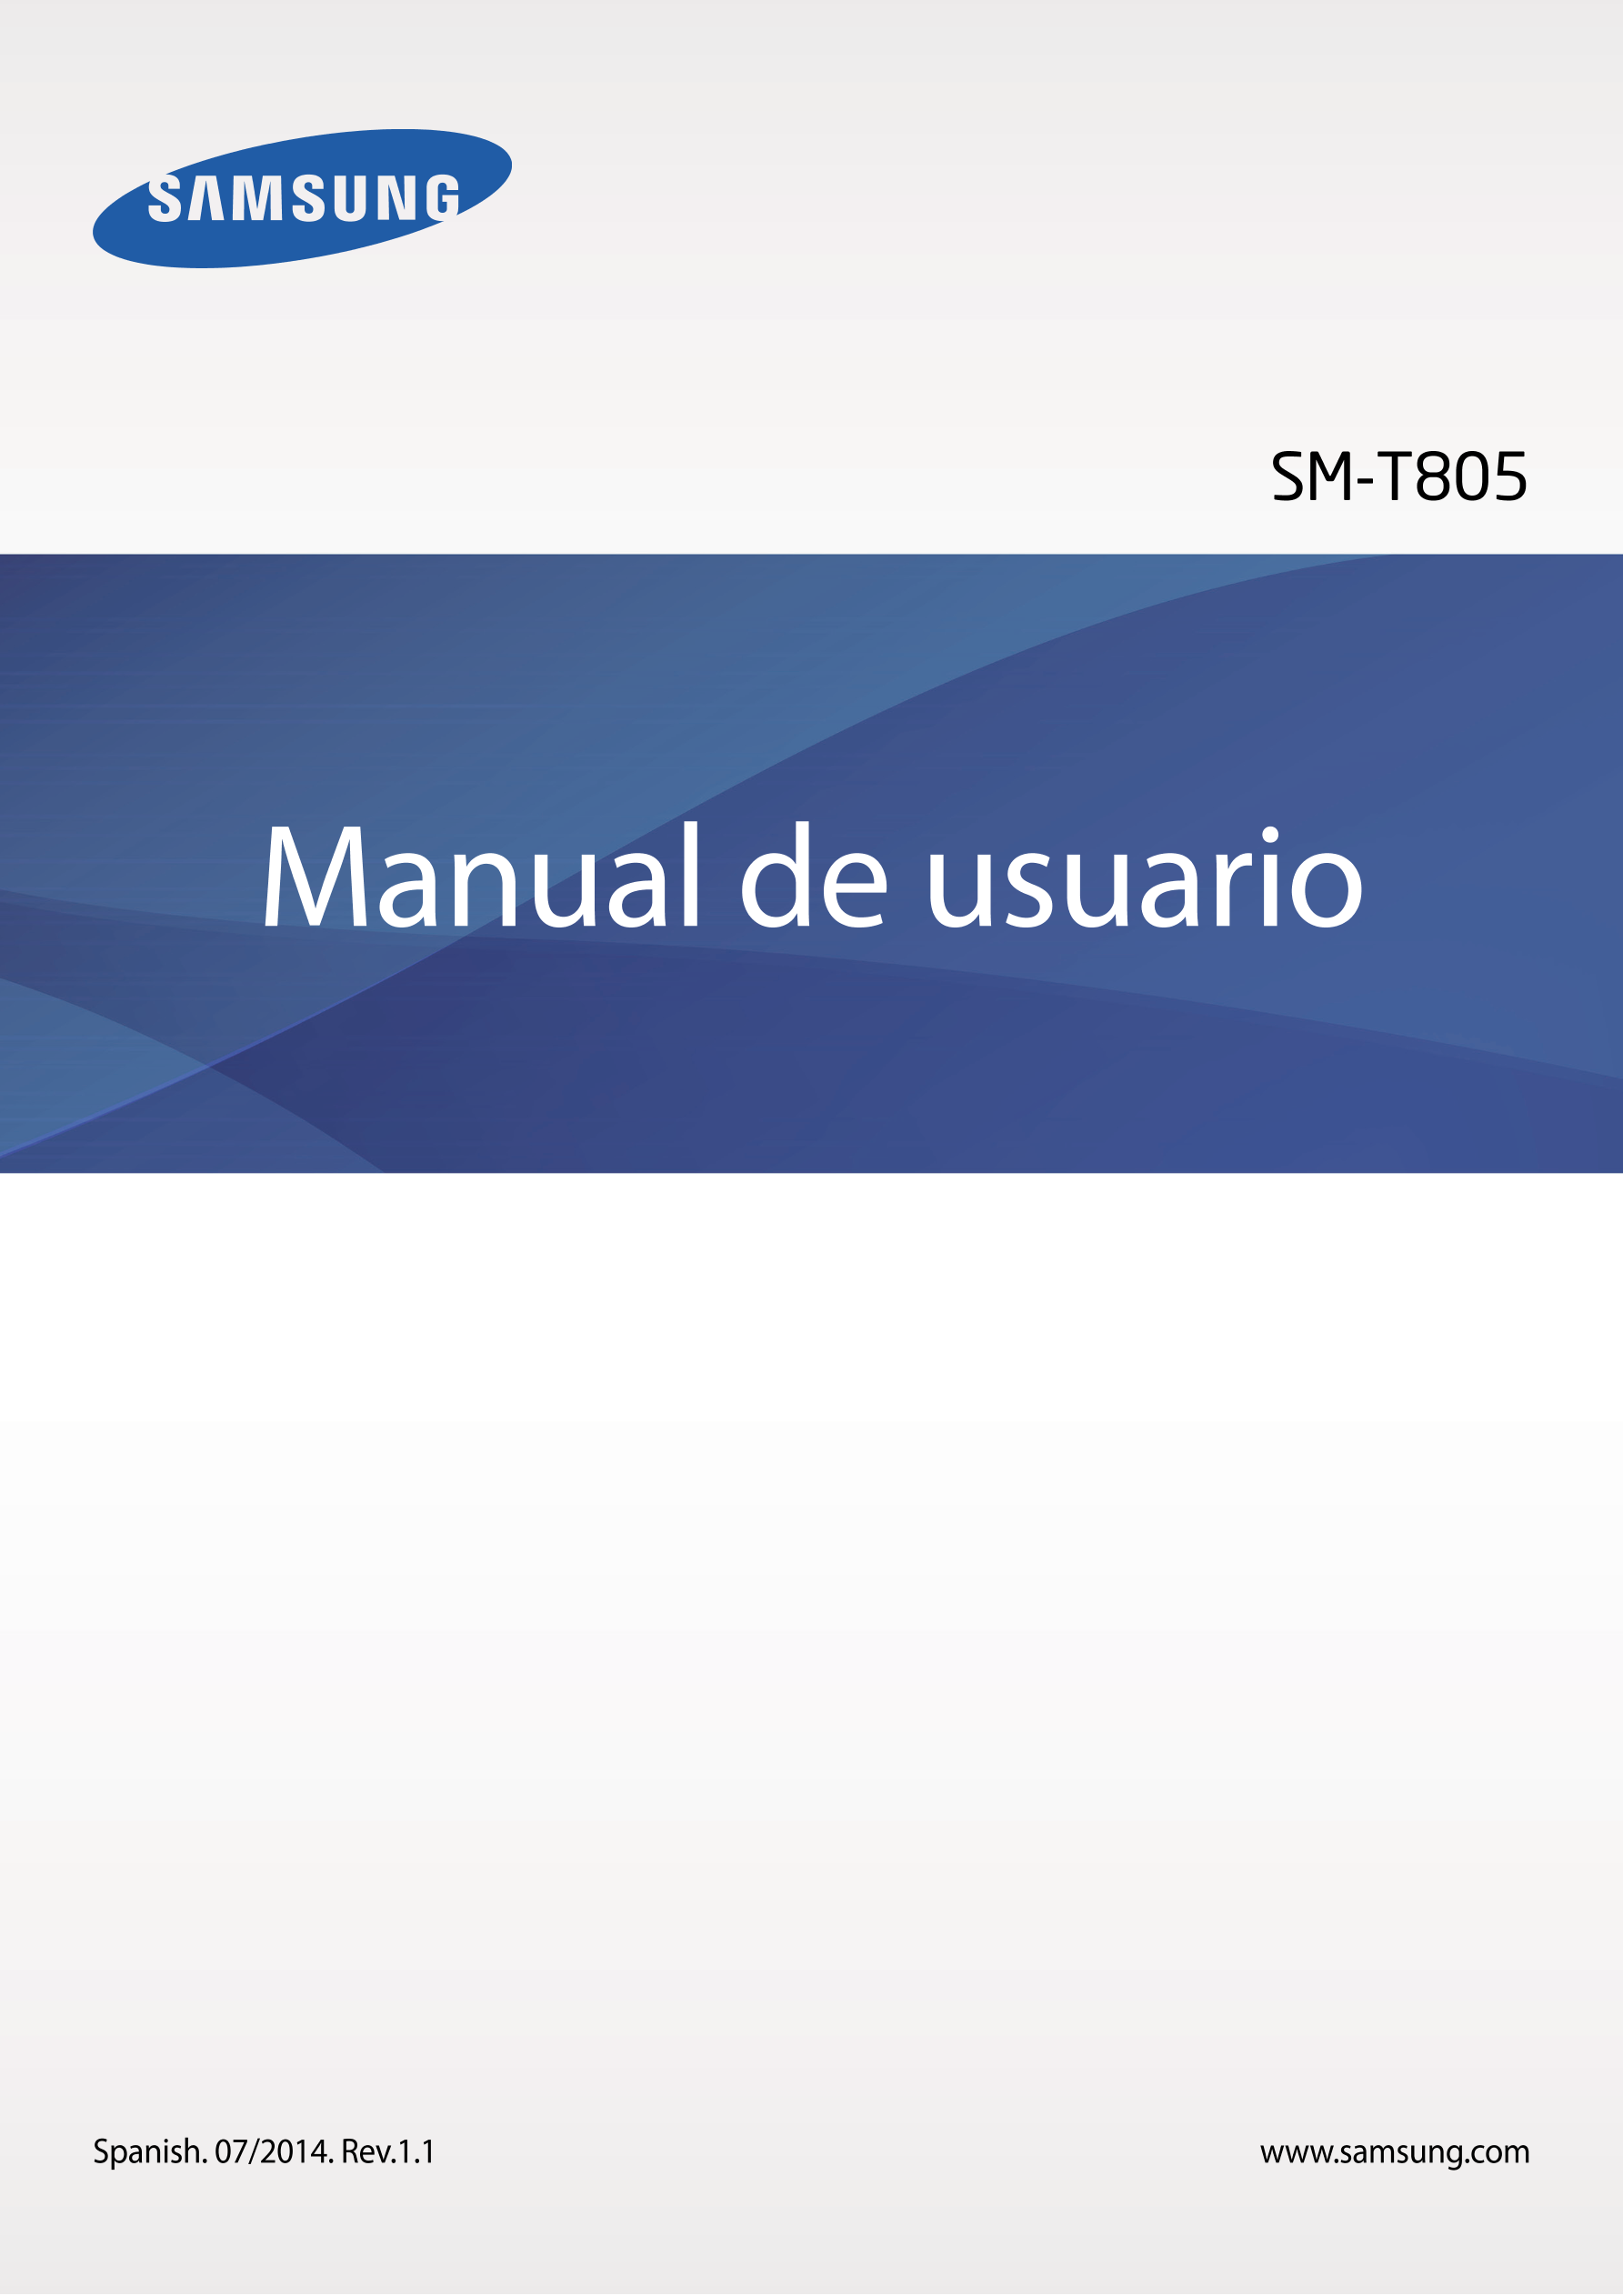 SM-T805
Manual de usuario
Spanish. 07/2014. Rev.1.1 www.samsung.com